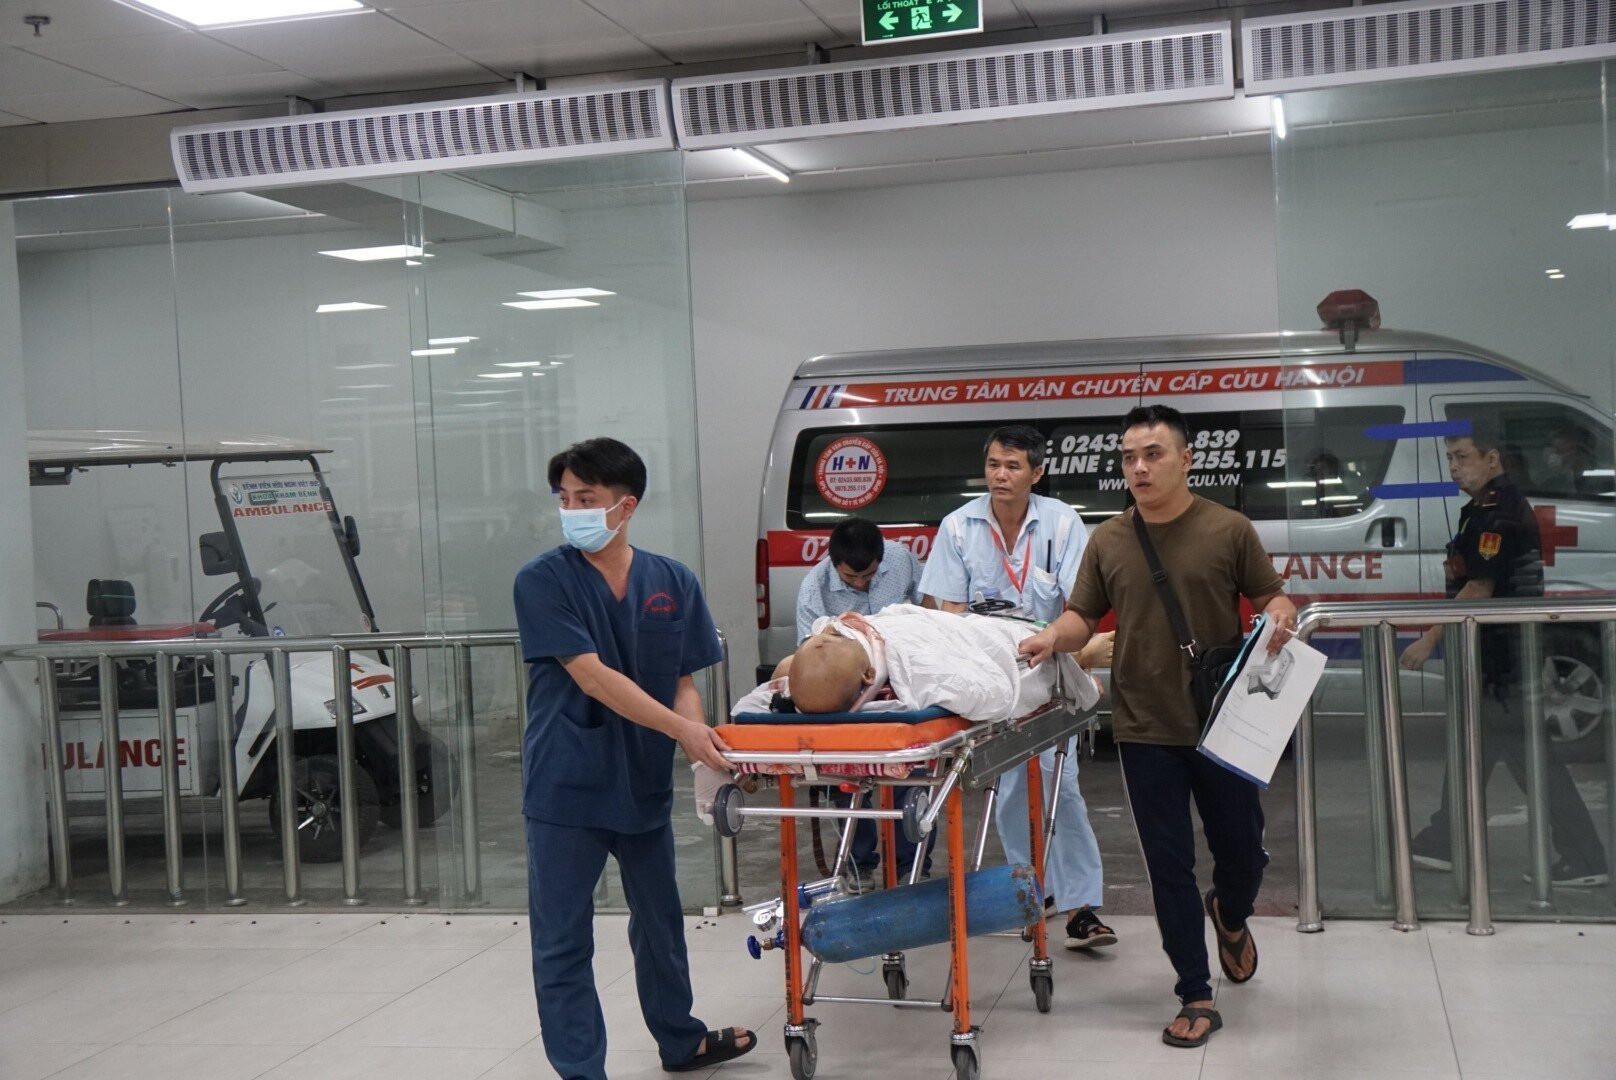  24 giờ trực cấp cứu tại bệnh viện ngoại khoa lớn nhất cả nước - 5